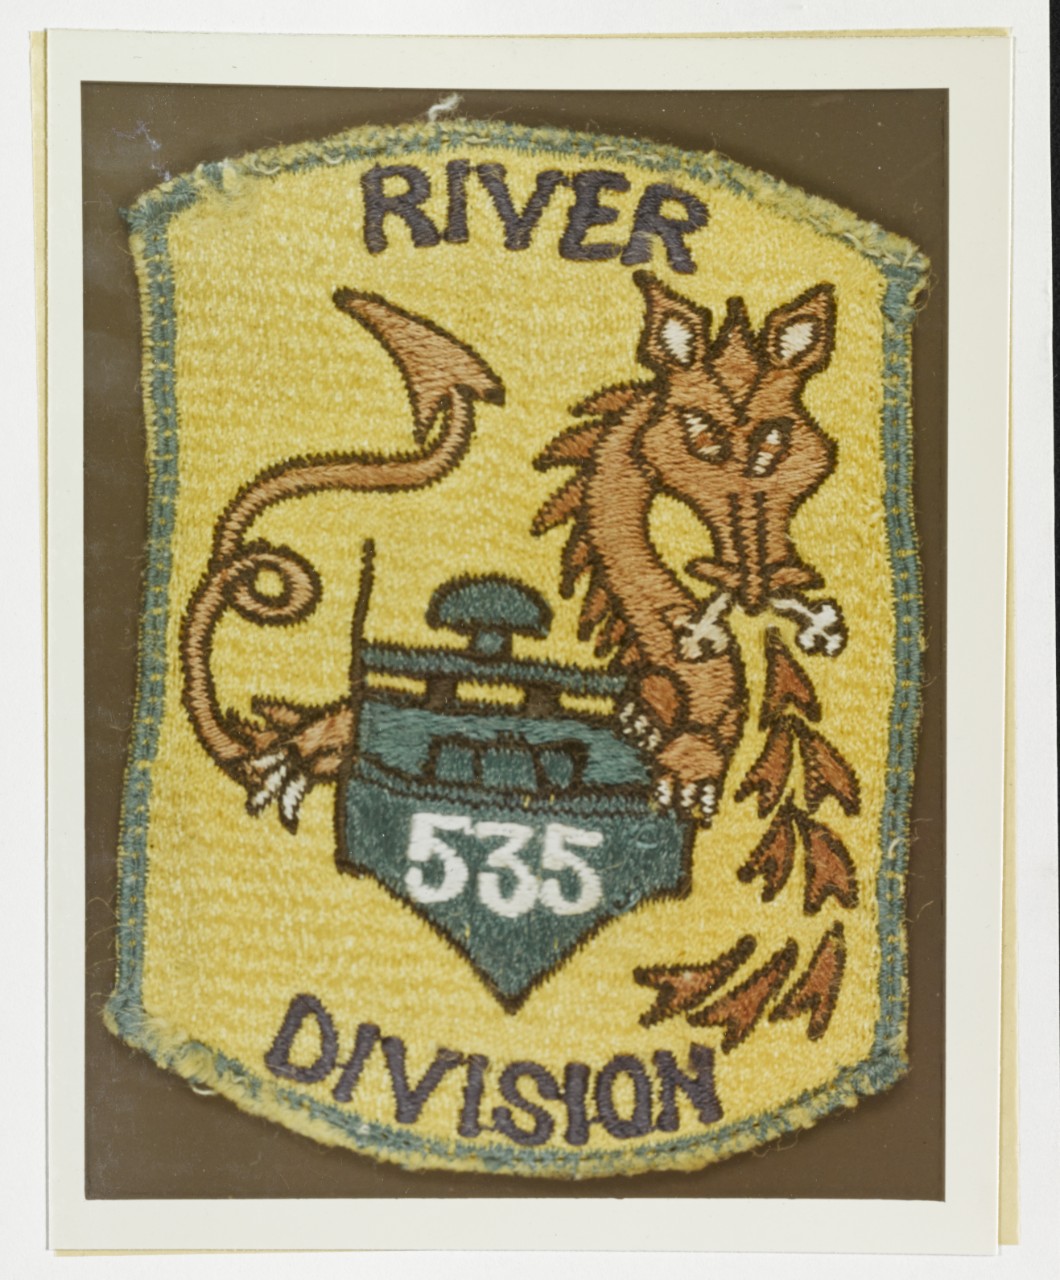 Insignia: River Division 535